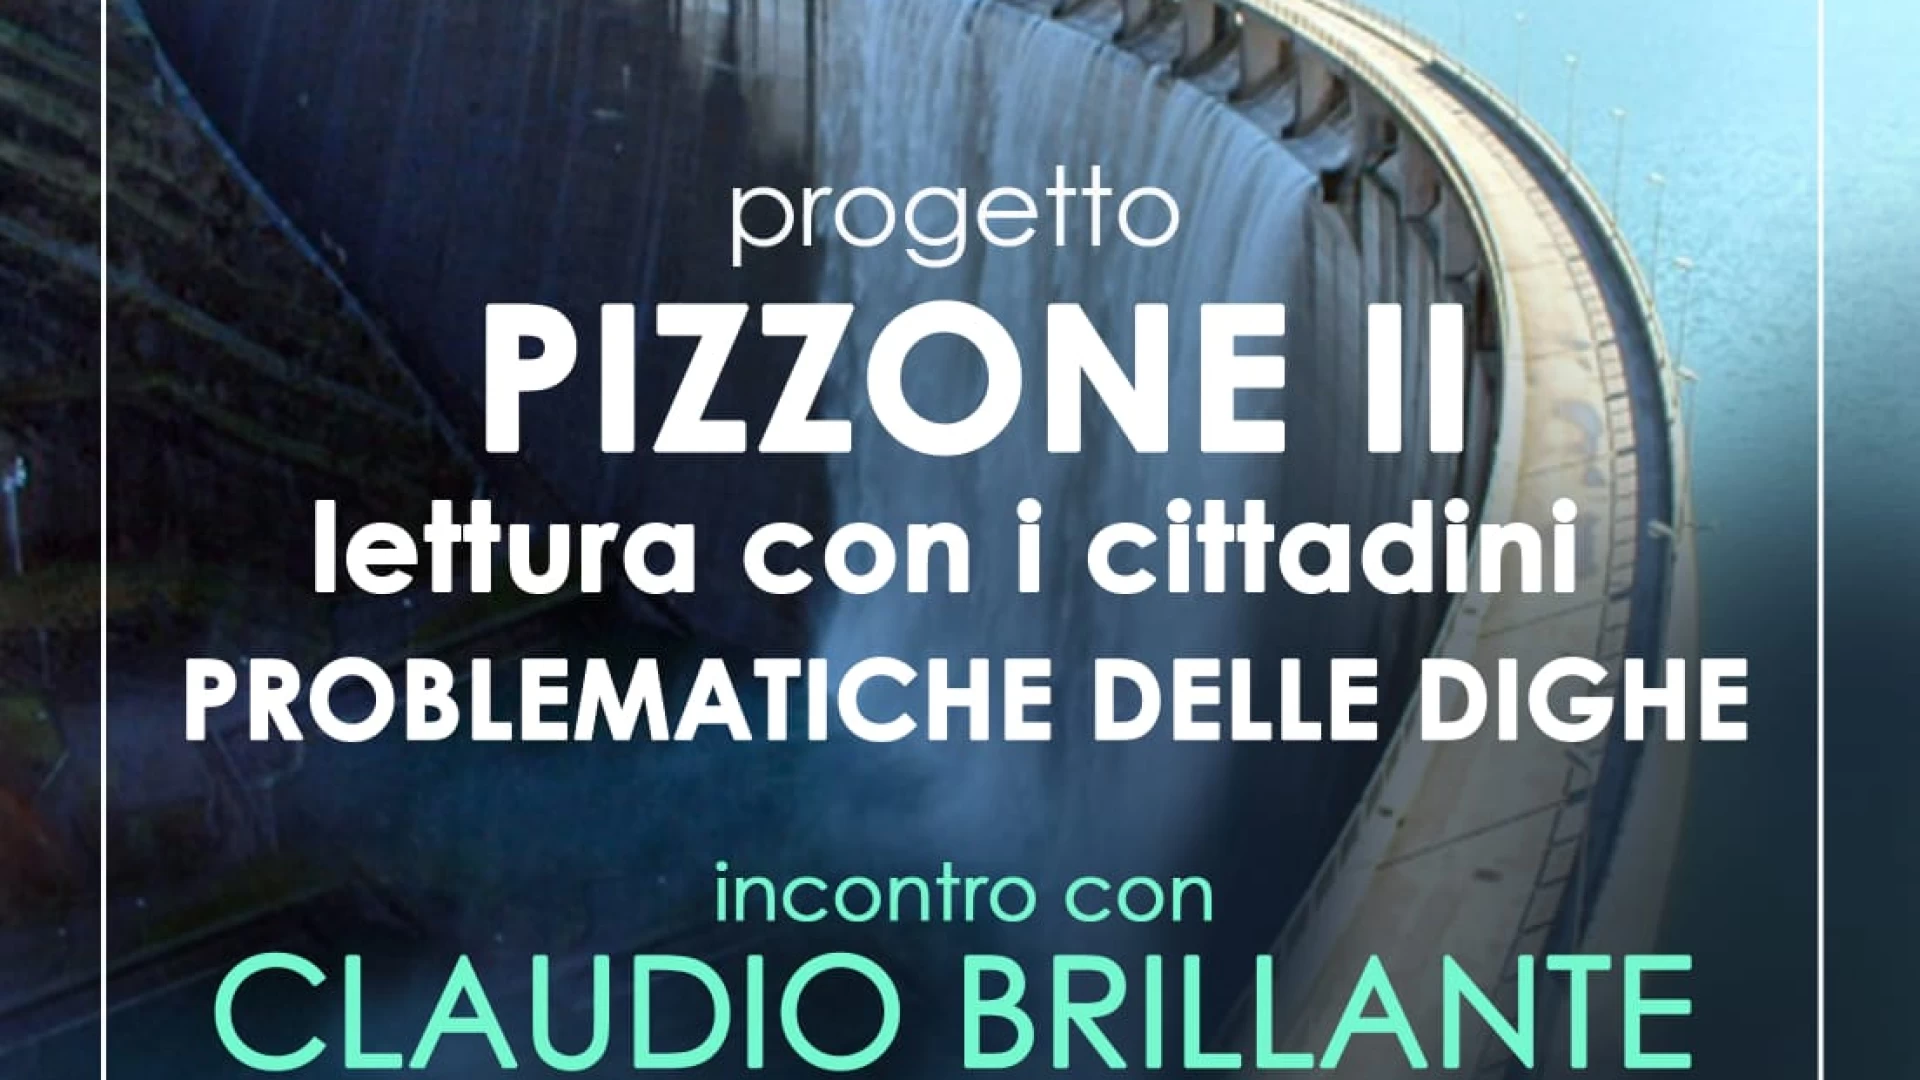 Progetto Pizzone II, oggi nuovo incontro con Claudio Brillante. Si parlerà delle Problematiche delle dighe.